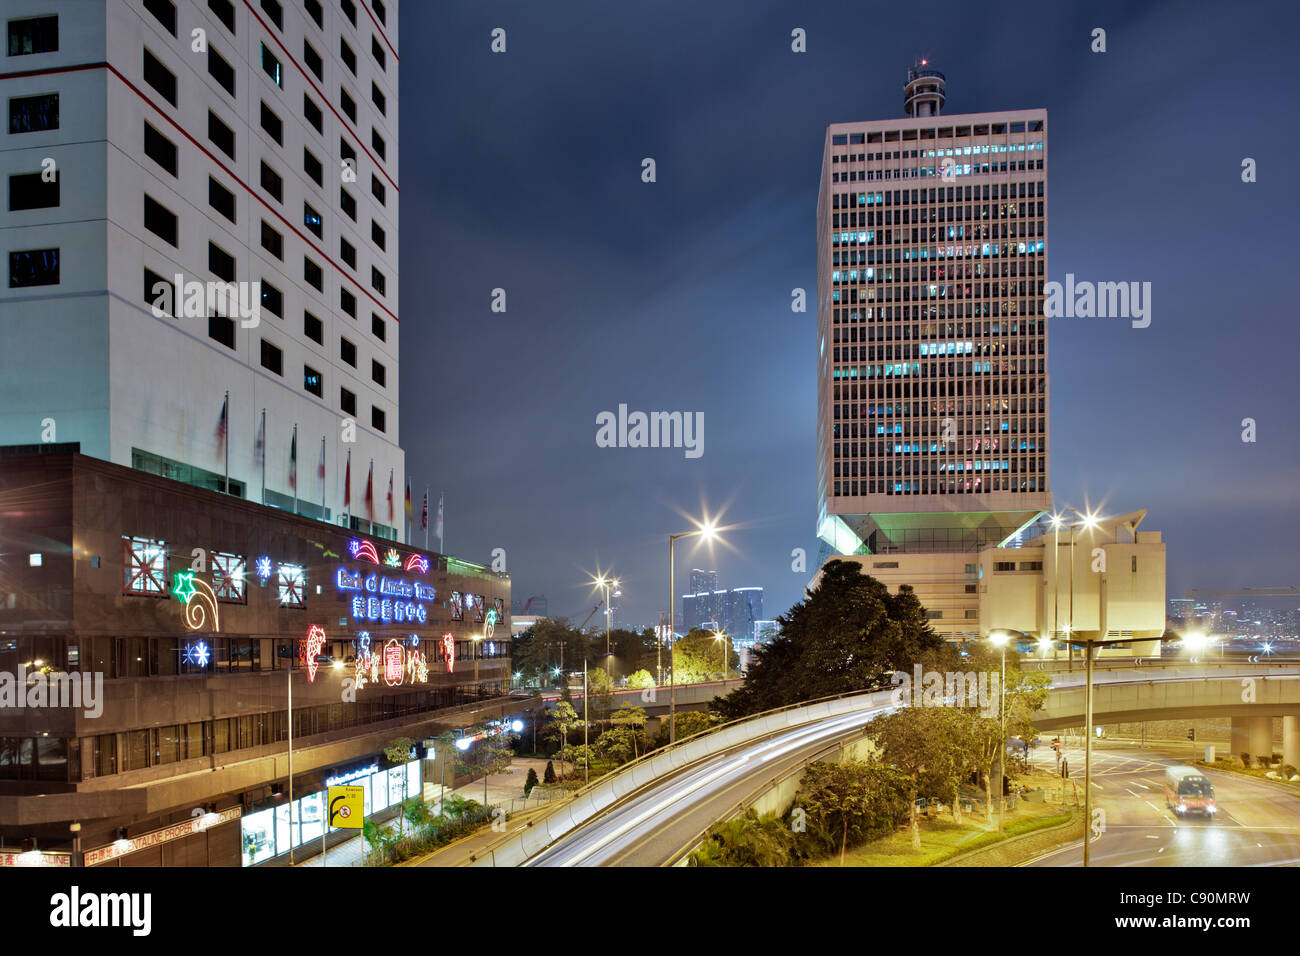 Bank of America Tower, Chinese People's Liberation Army Forces Hong Kong Building at night, Hong Kong, China Stock Photo